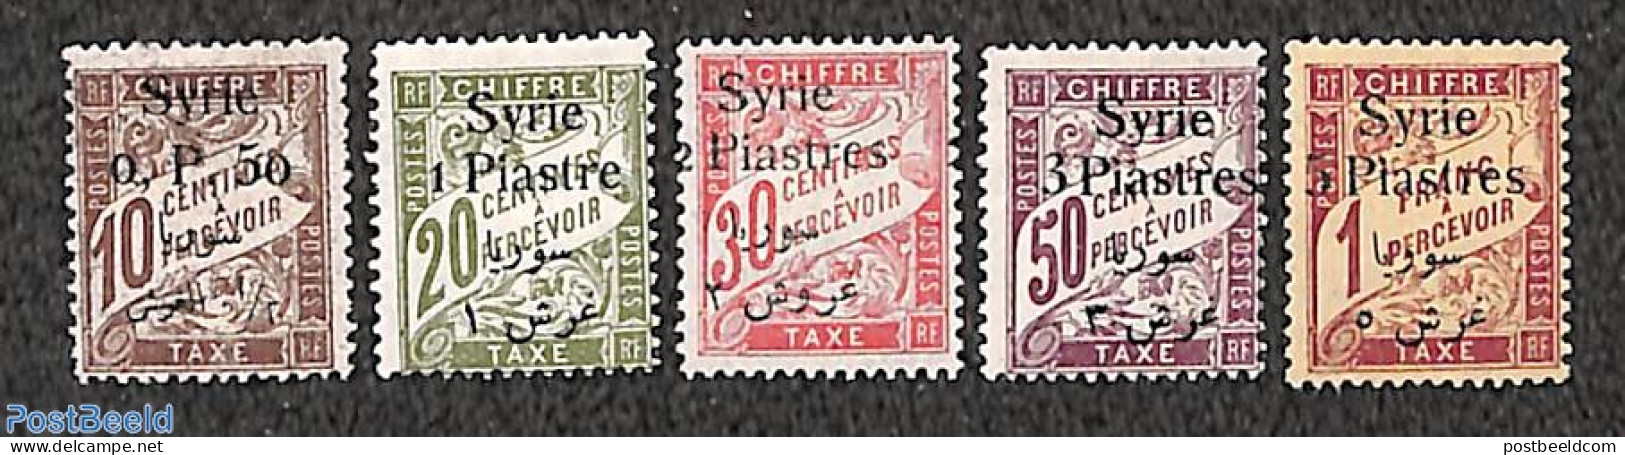 Syria 1924 Postage Due 5v, Unused (hinged) - Siria